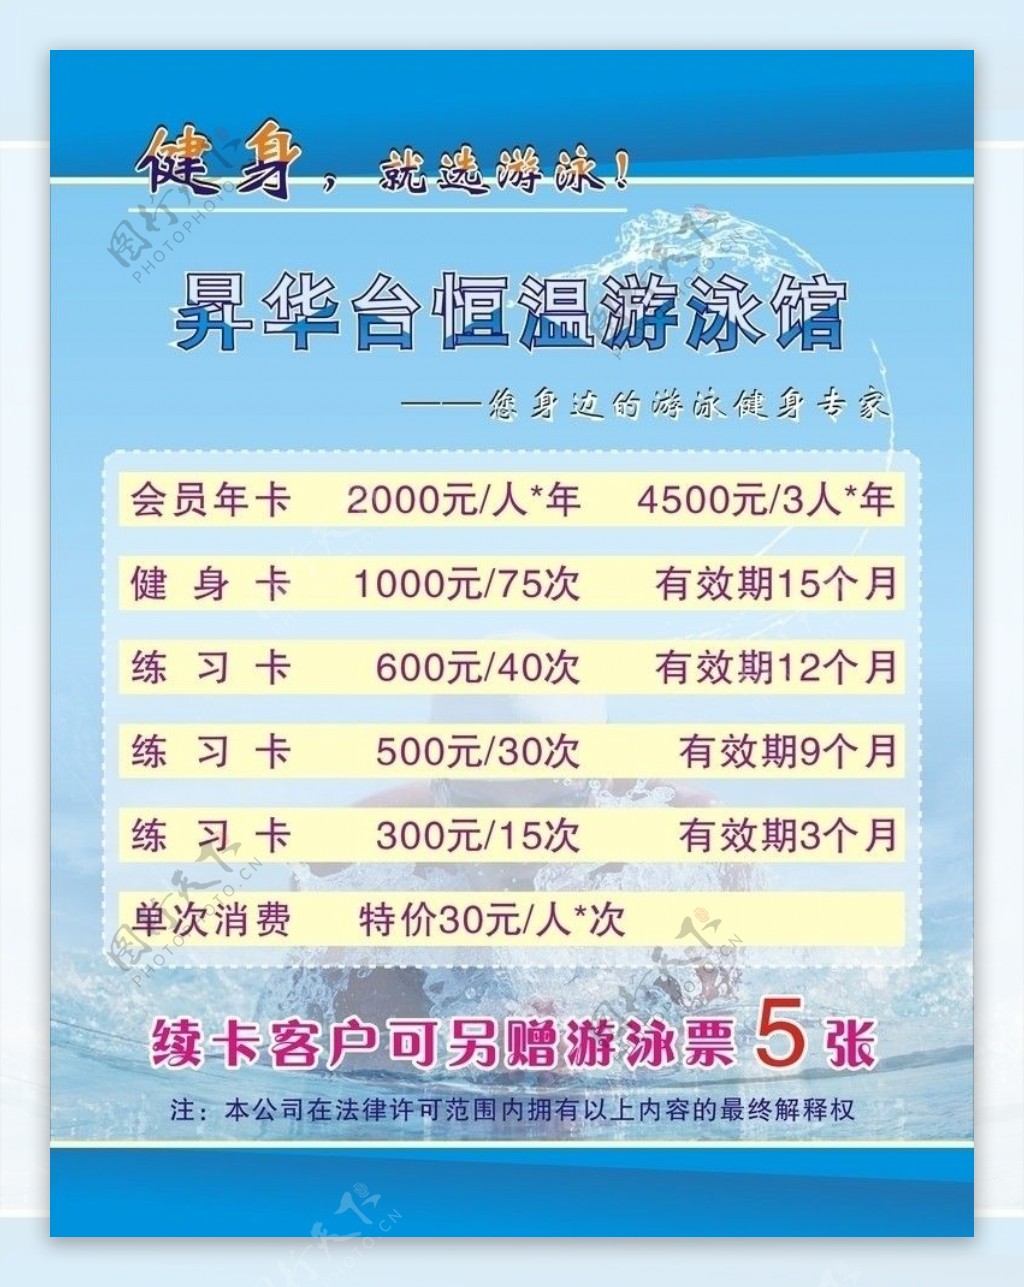 游泳馆宣传海报图片